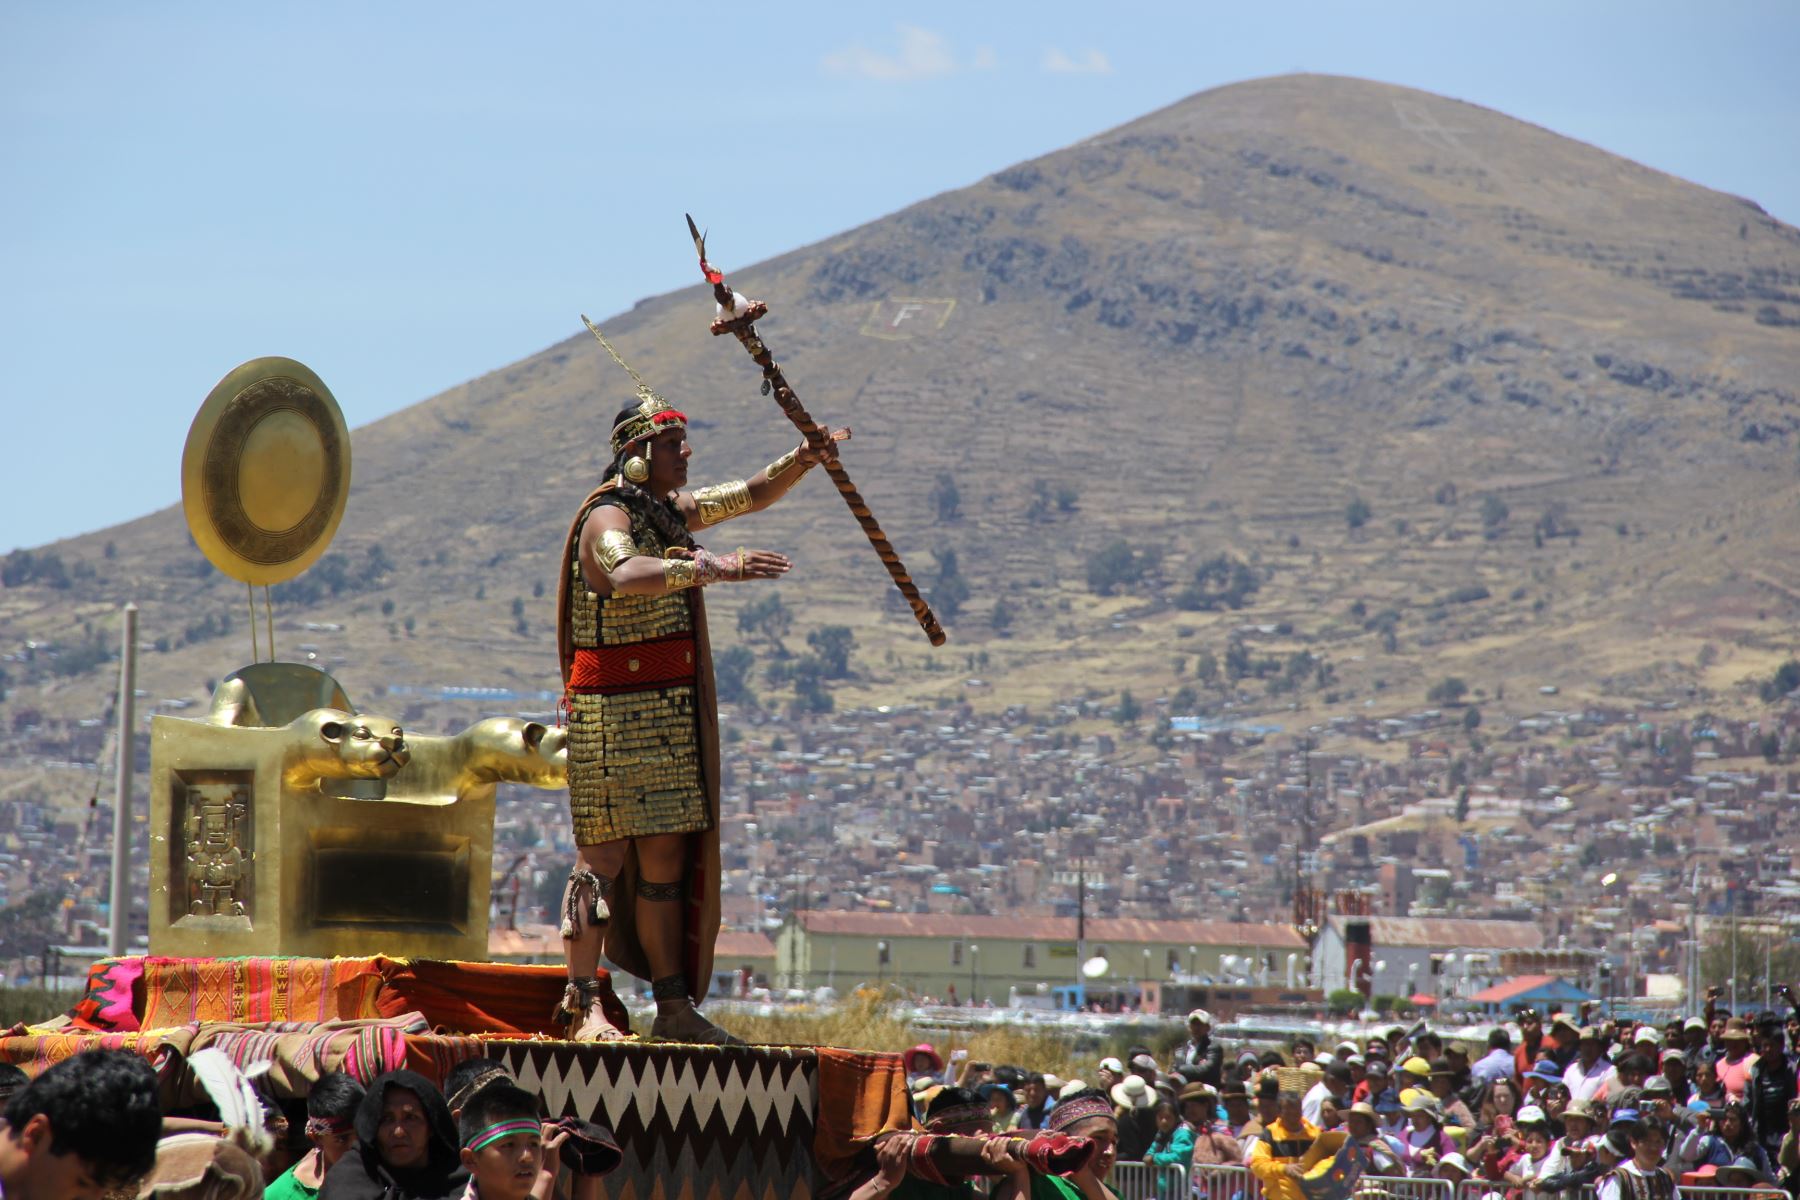 Escenifican mito de Manco Cápac y Mama Ocllo en Puno.